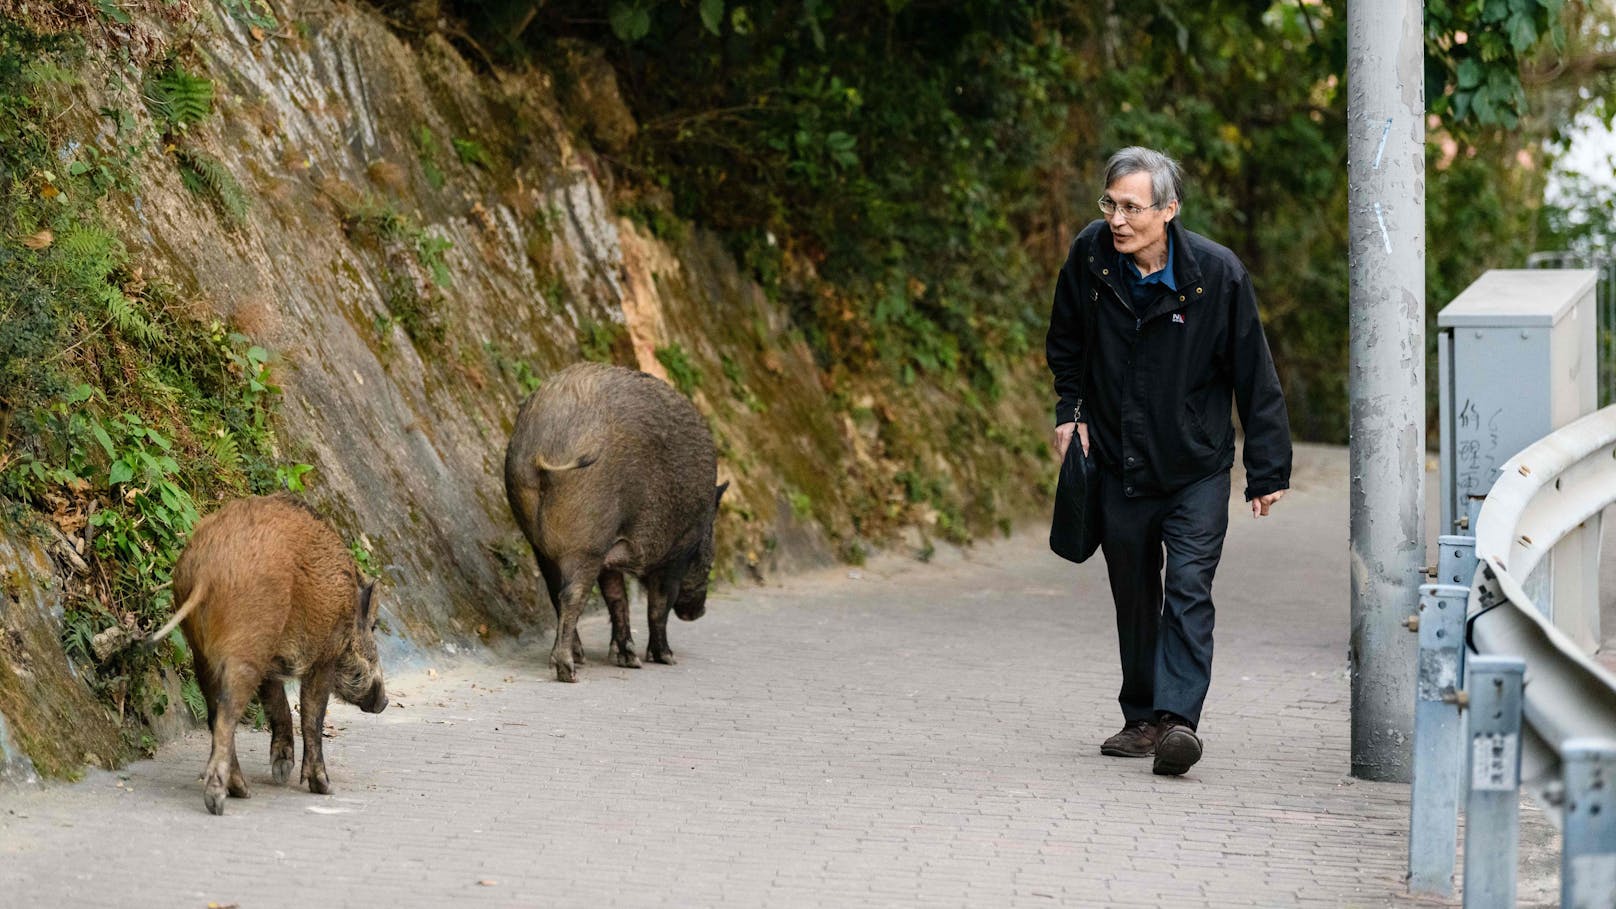 Begegnungen mit Wildschweinen gehören für die Bewohner der chinesischen Millionenmetropole Hongkong zum Alltag.